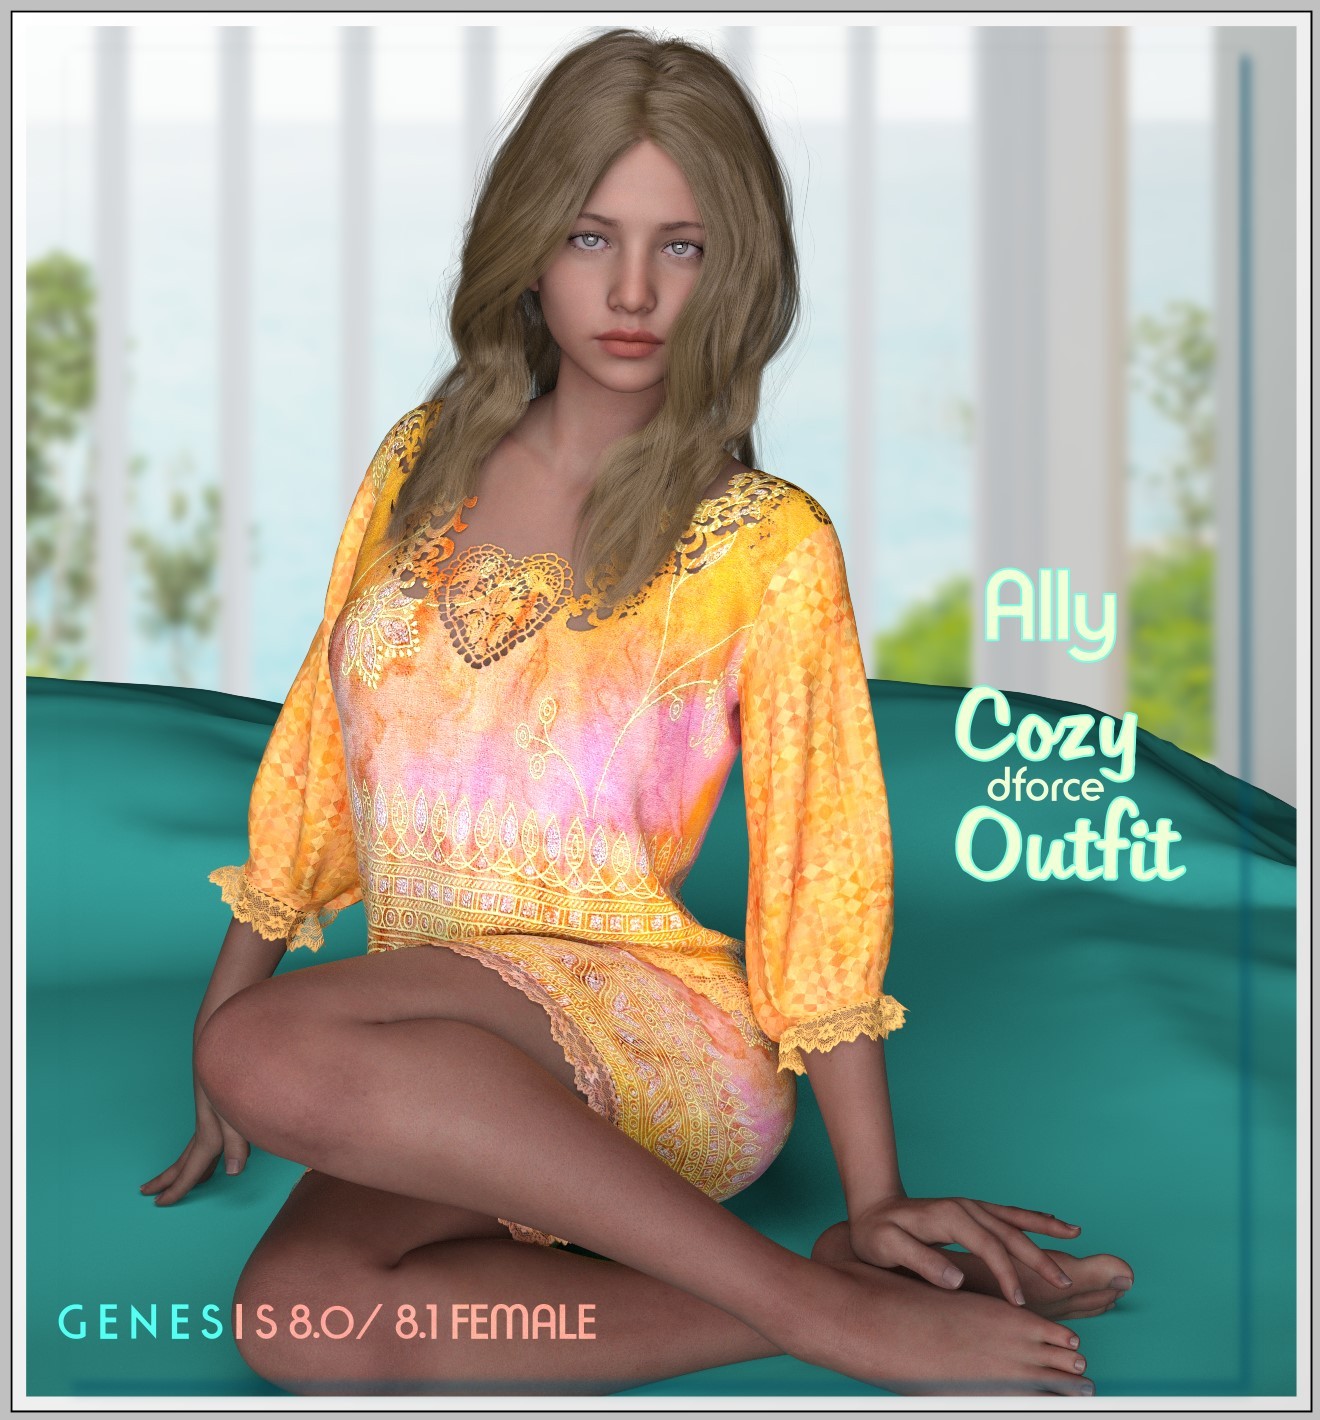 dforce- Ally Cozy Outfit - G8 by: LUNA3D, 3D Models by Daz 3D